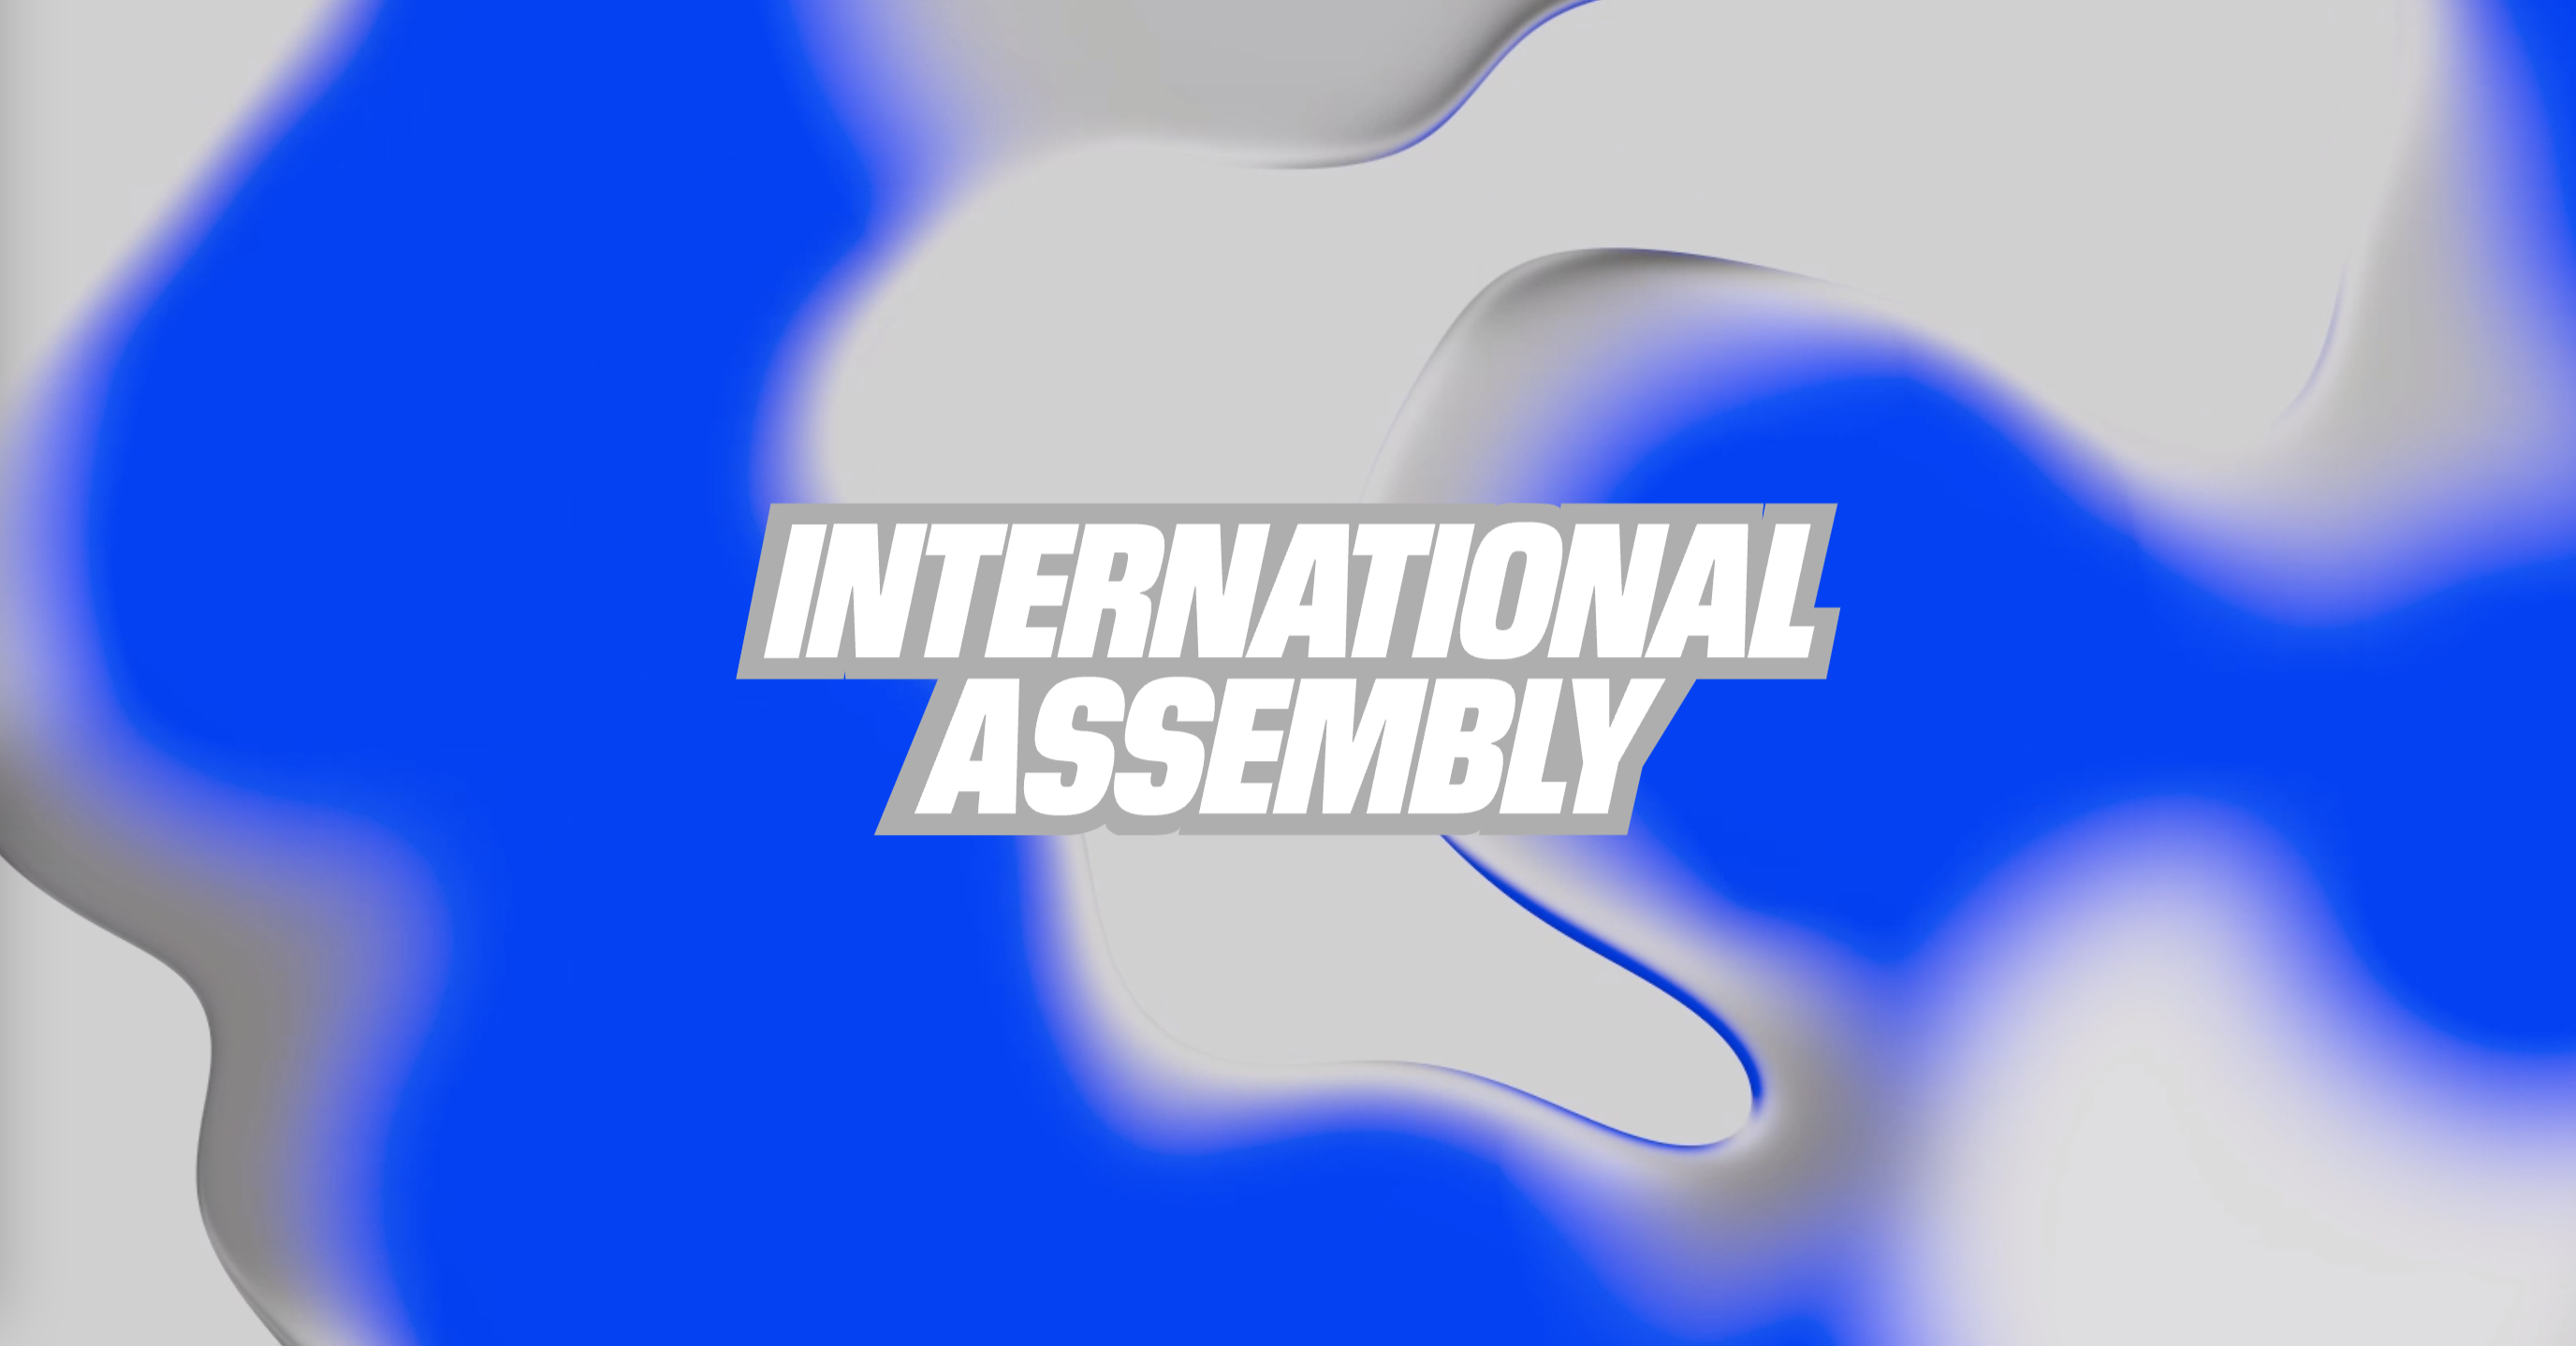 International Assembly